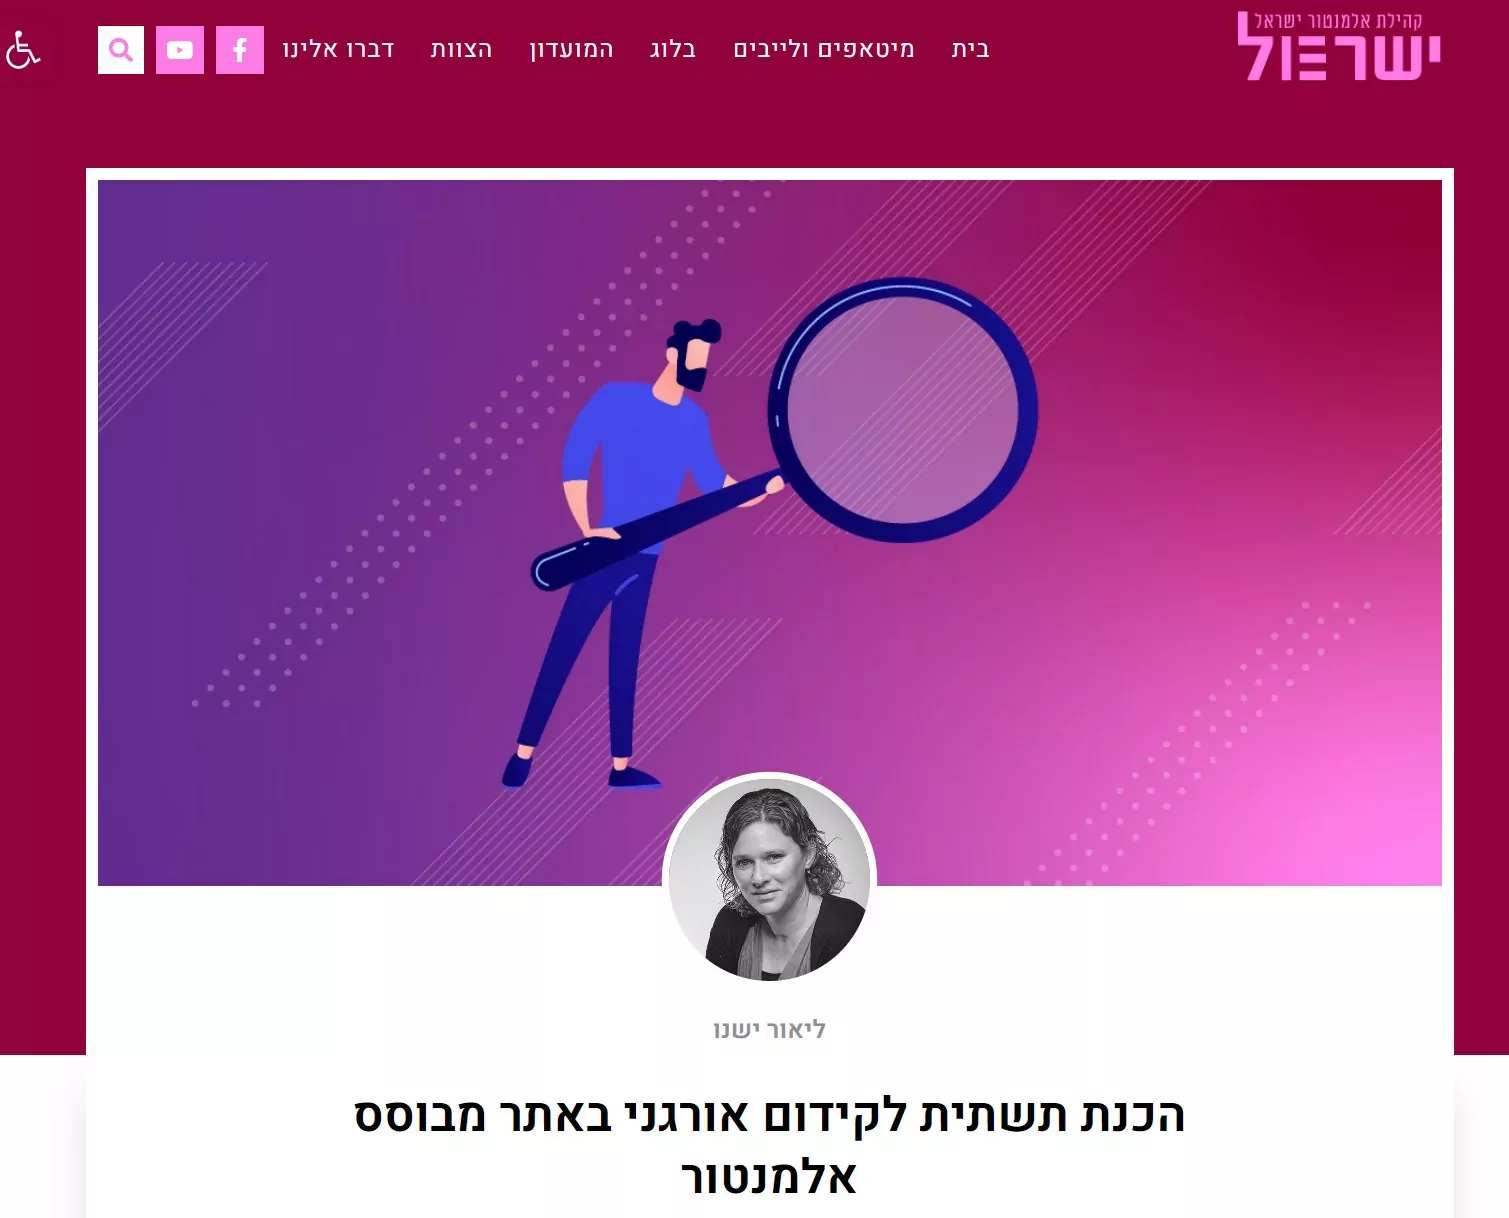 צילום מסך של מאמר שכתבה ליאור ישנו מומחית קידום אתרים בקהילת אלמנטור ישראל